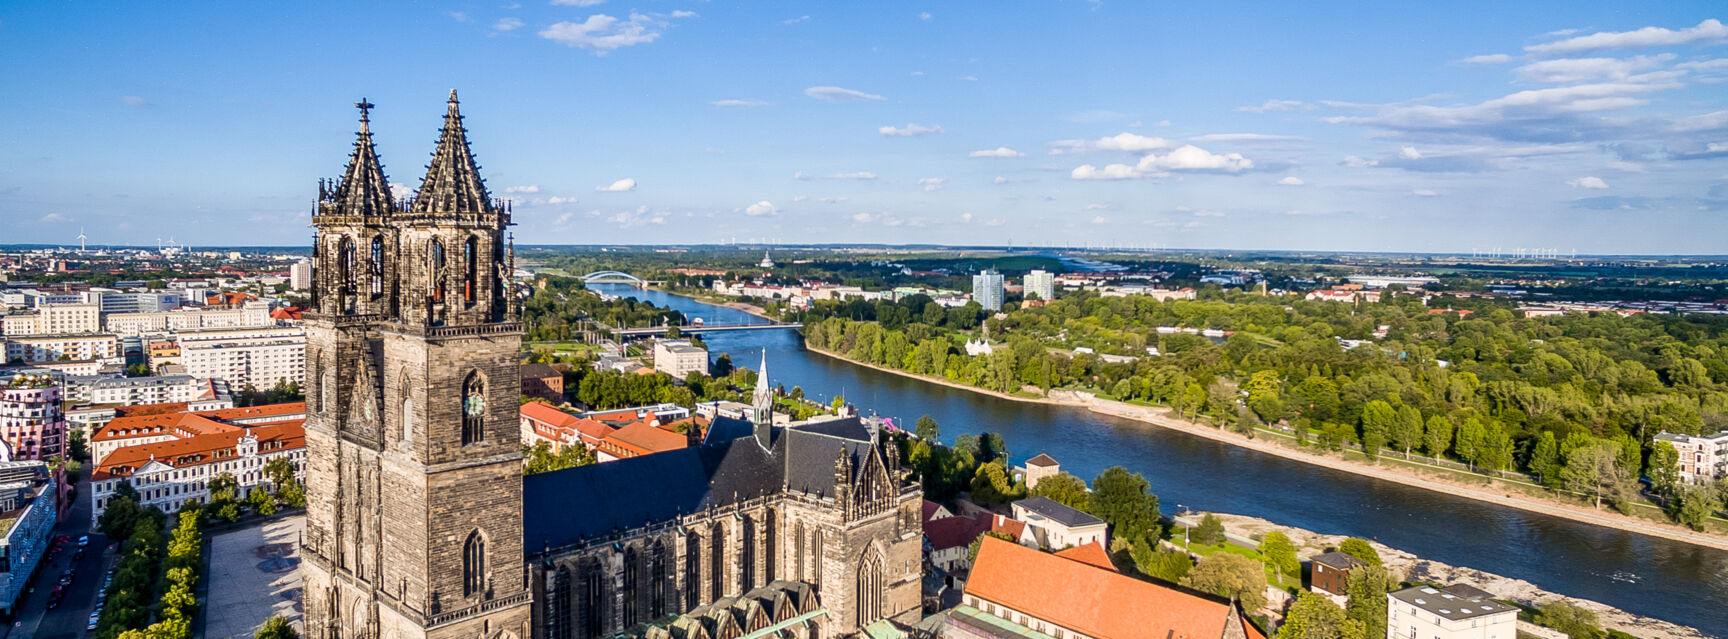 Magdeburg an der Elbe © Andreas Lander